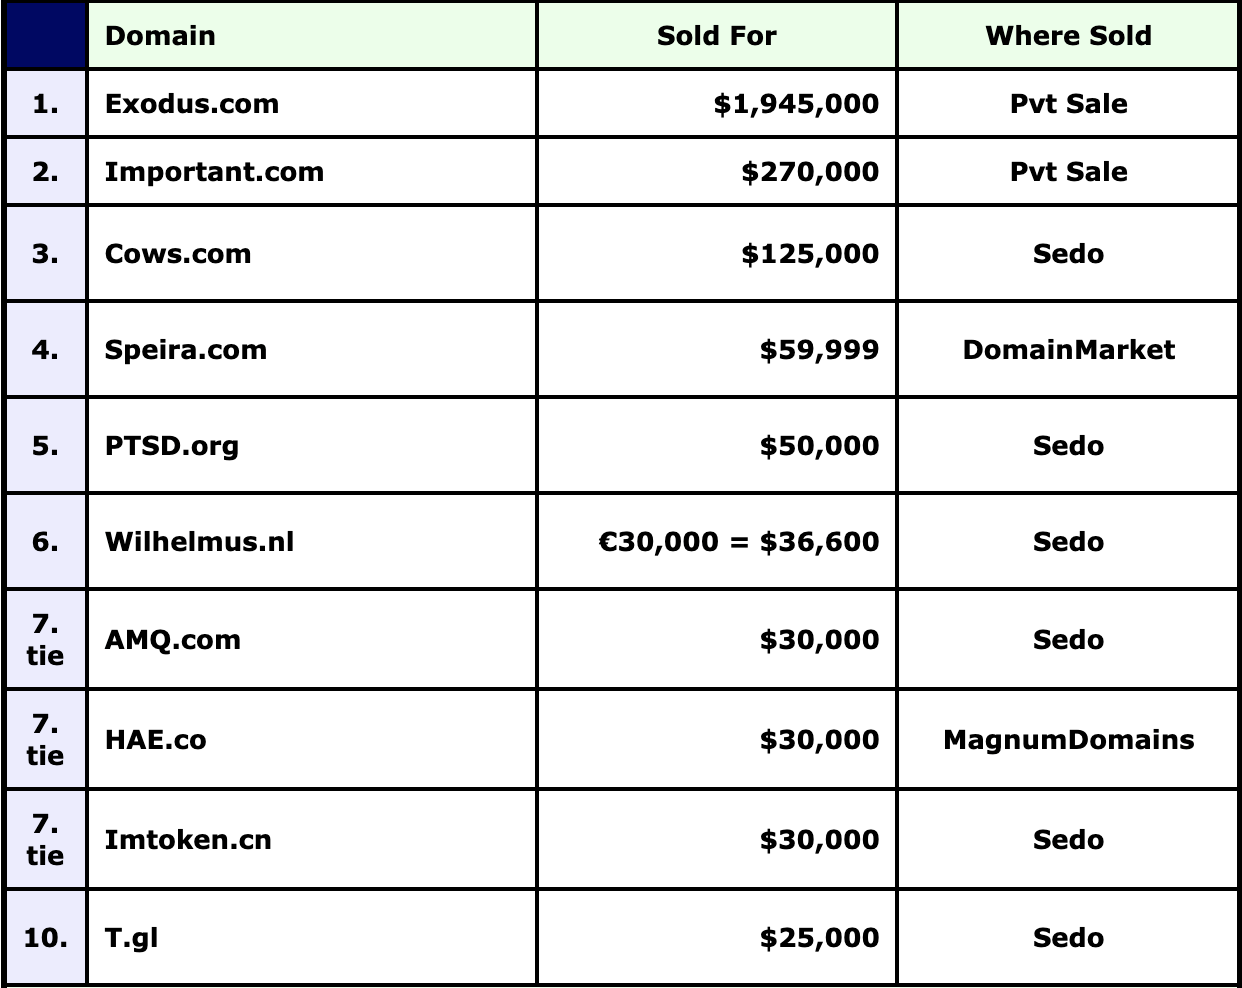 Top ten domain sales